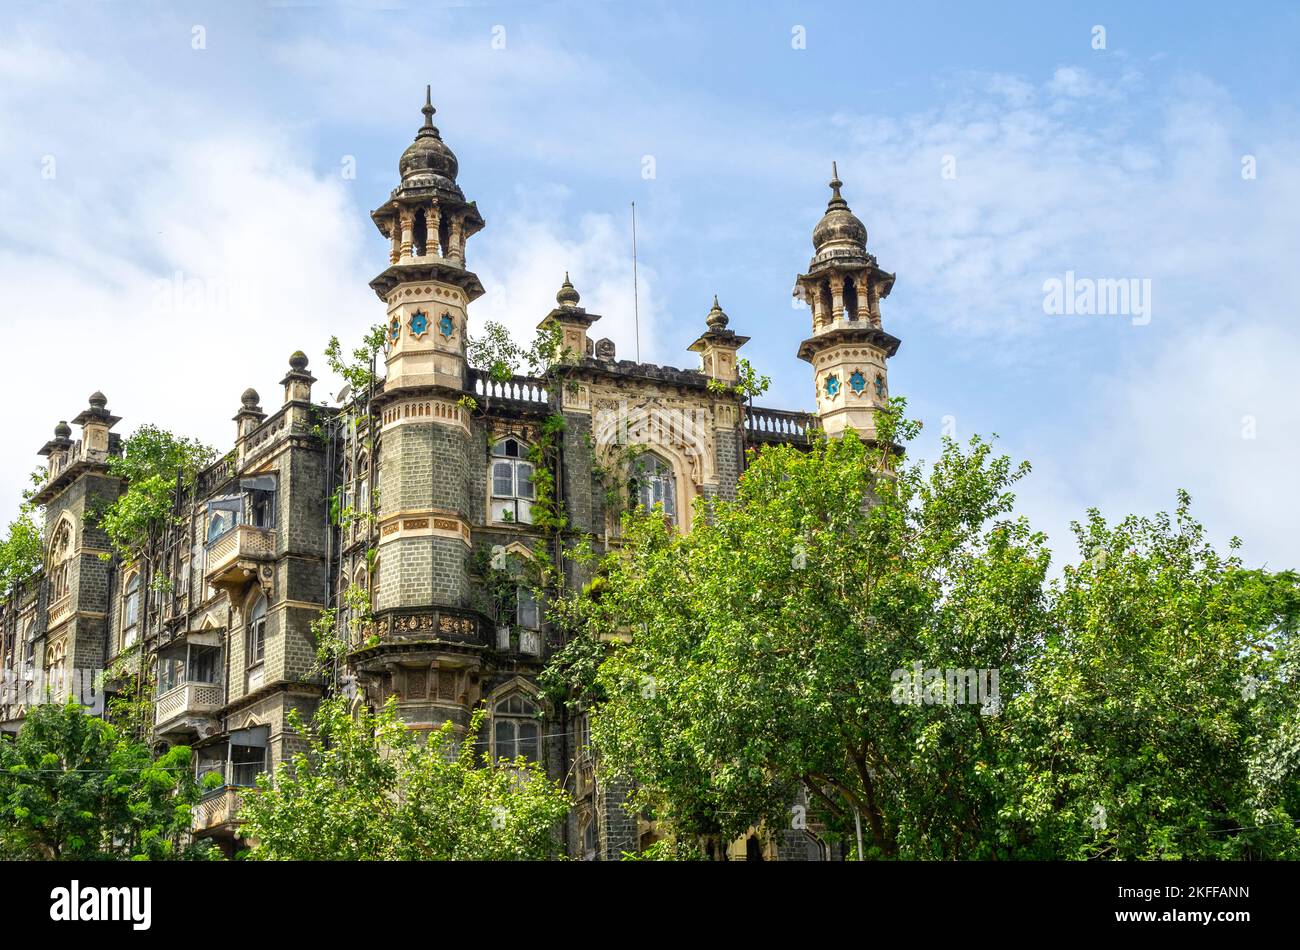 Ancienne architecture coloniale britannique abandonnée, maison d'appartement à Mumbai ou Bombay, Inde Banque D'Images